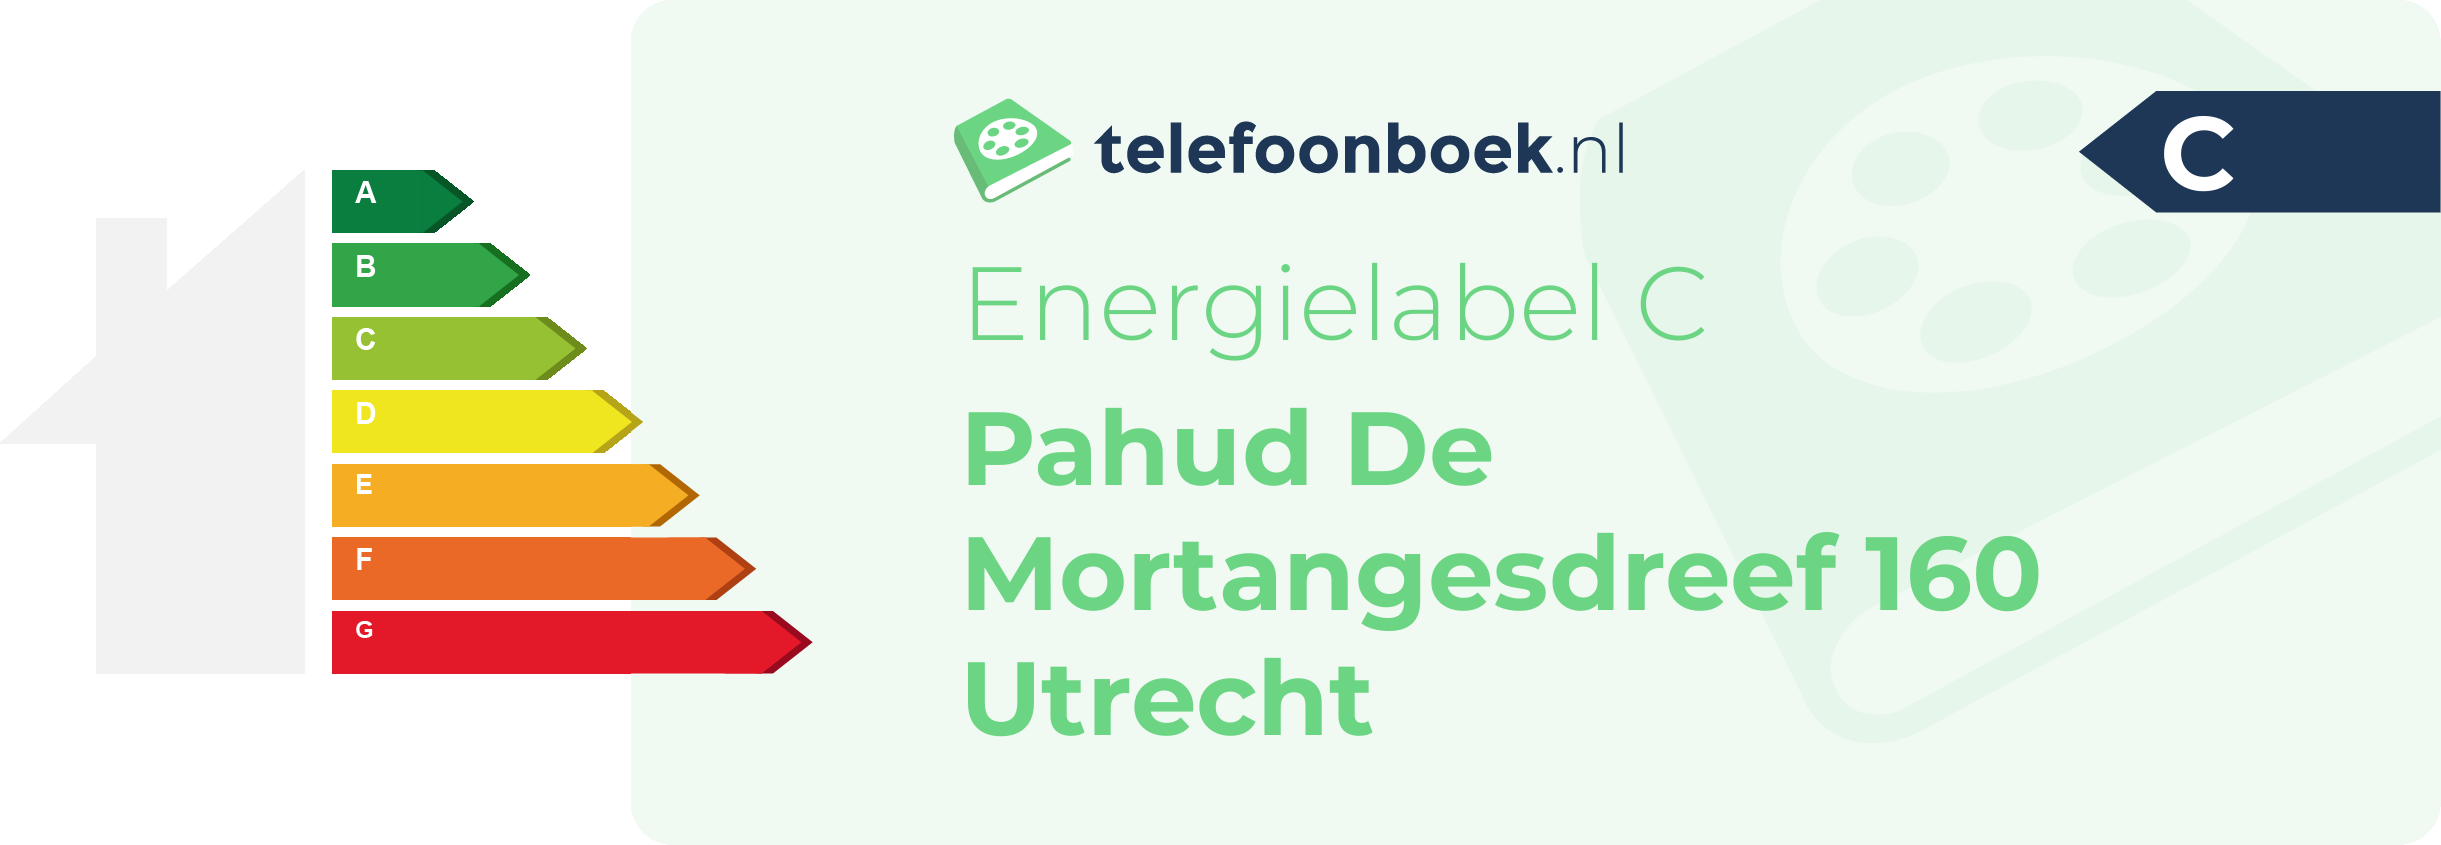 Energielabel Pahud De Mortangesdreef 160 Utrecht